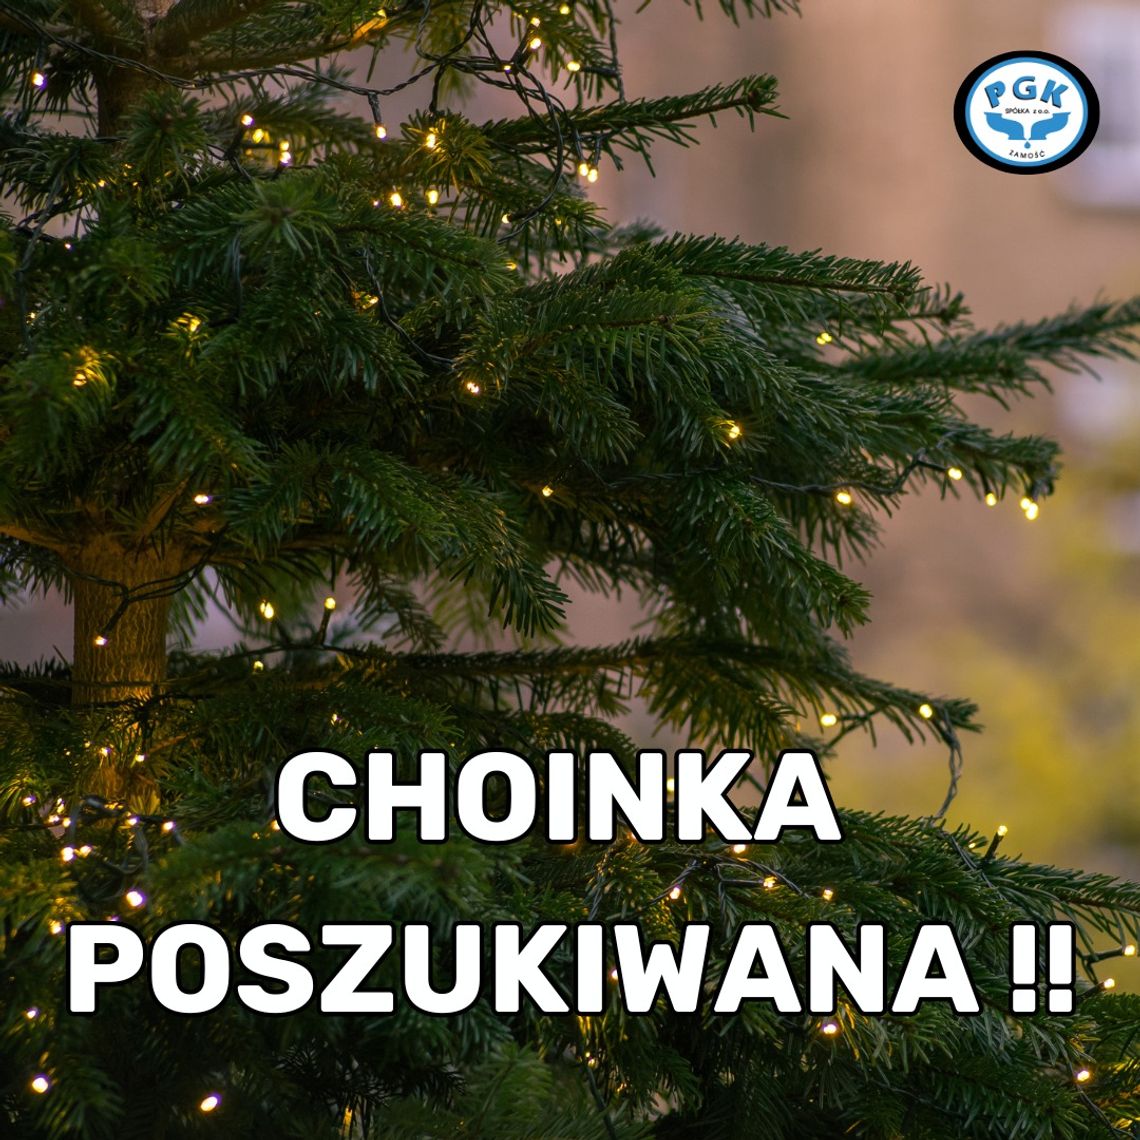 "Chcemy stworzyć w Zamościu klimat tradycyjnych Świąt i postawić na Rynku Wielkim duuużą, żywą choinkę" - informuje PGK Zamość.